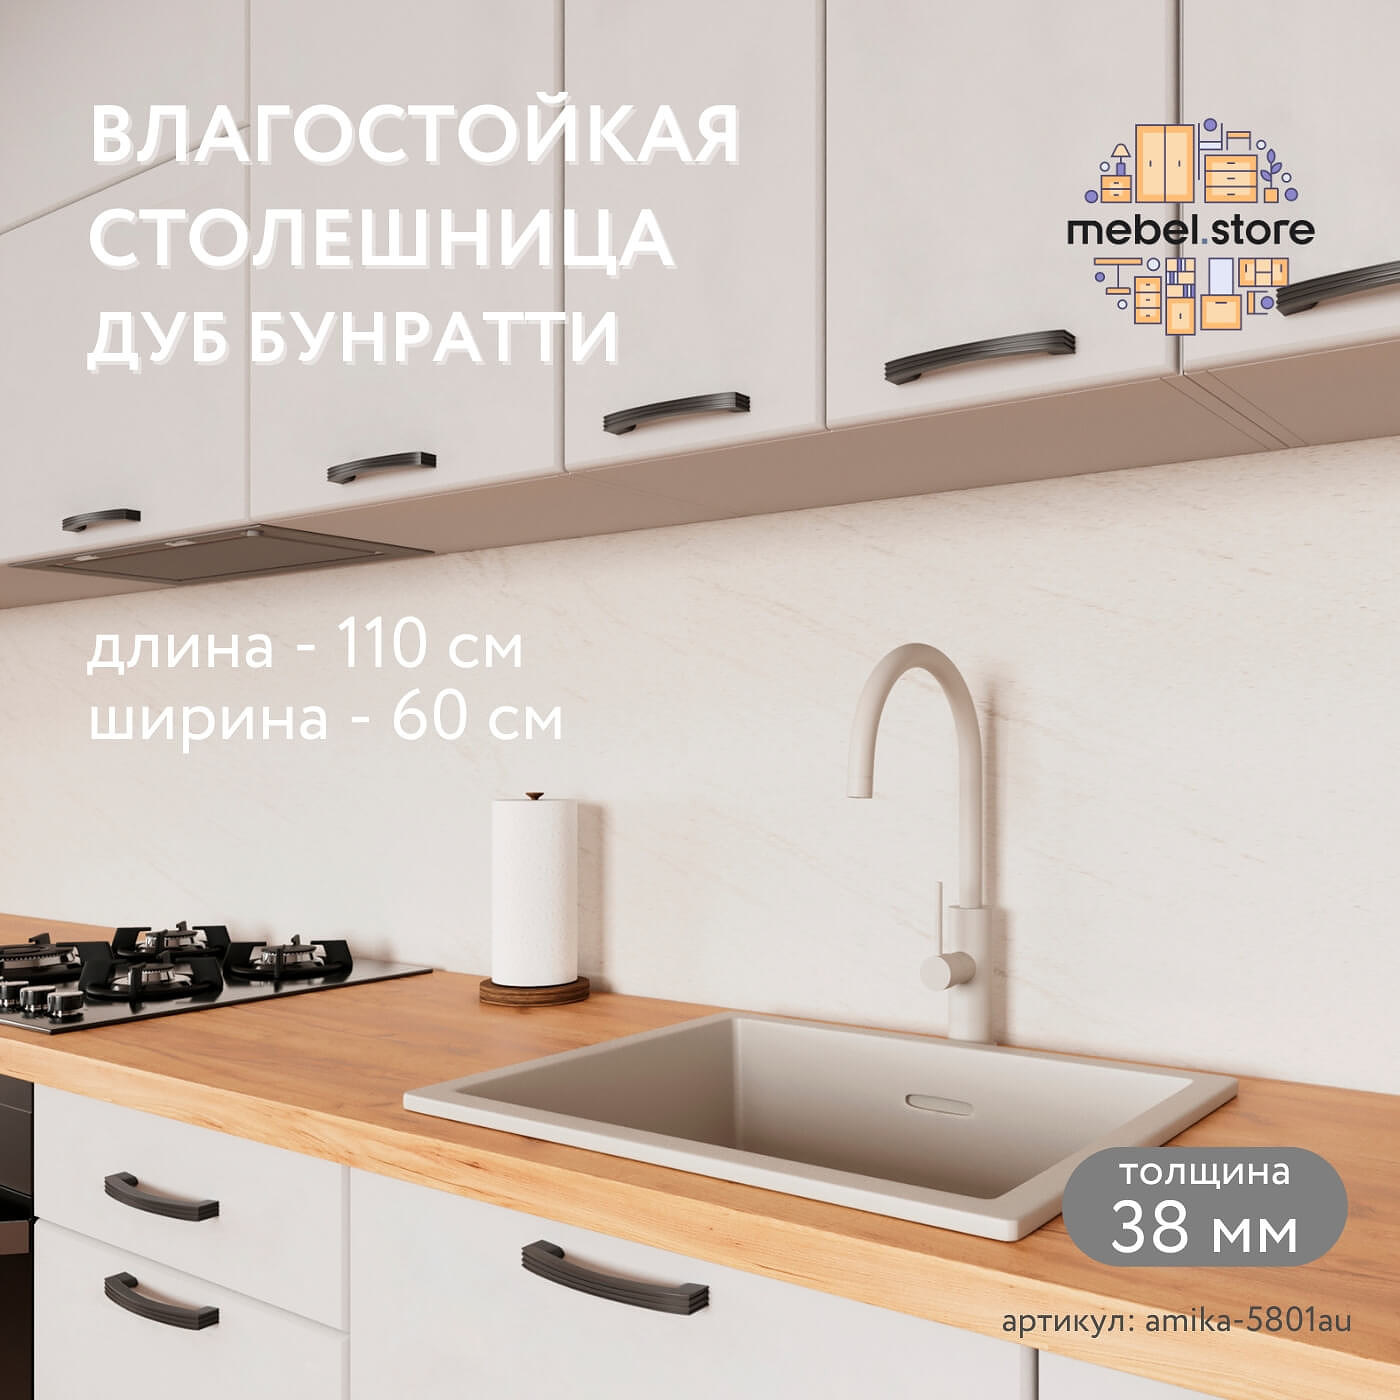 Столешница Амика-5801au минимализм для кухни - фото 1 large